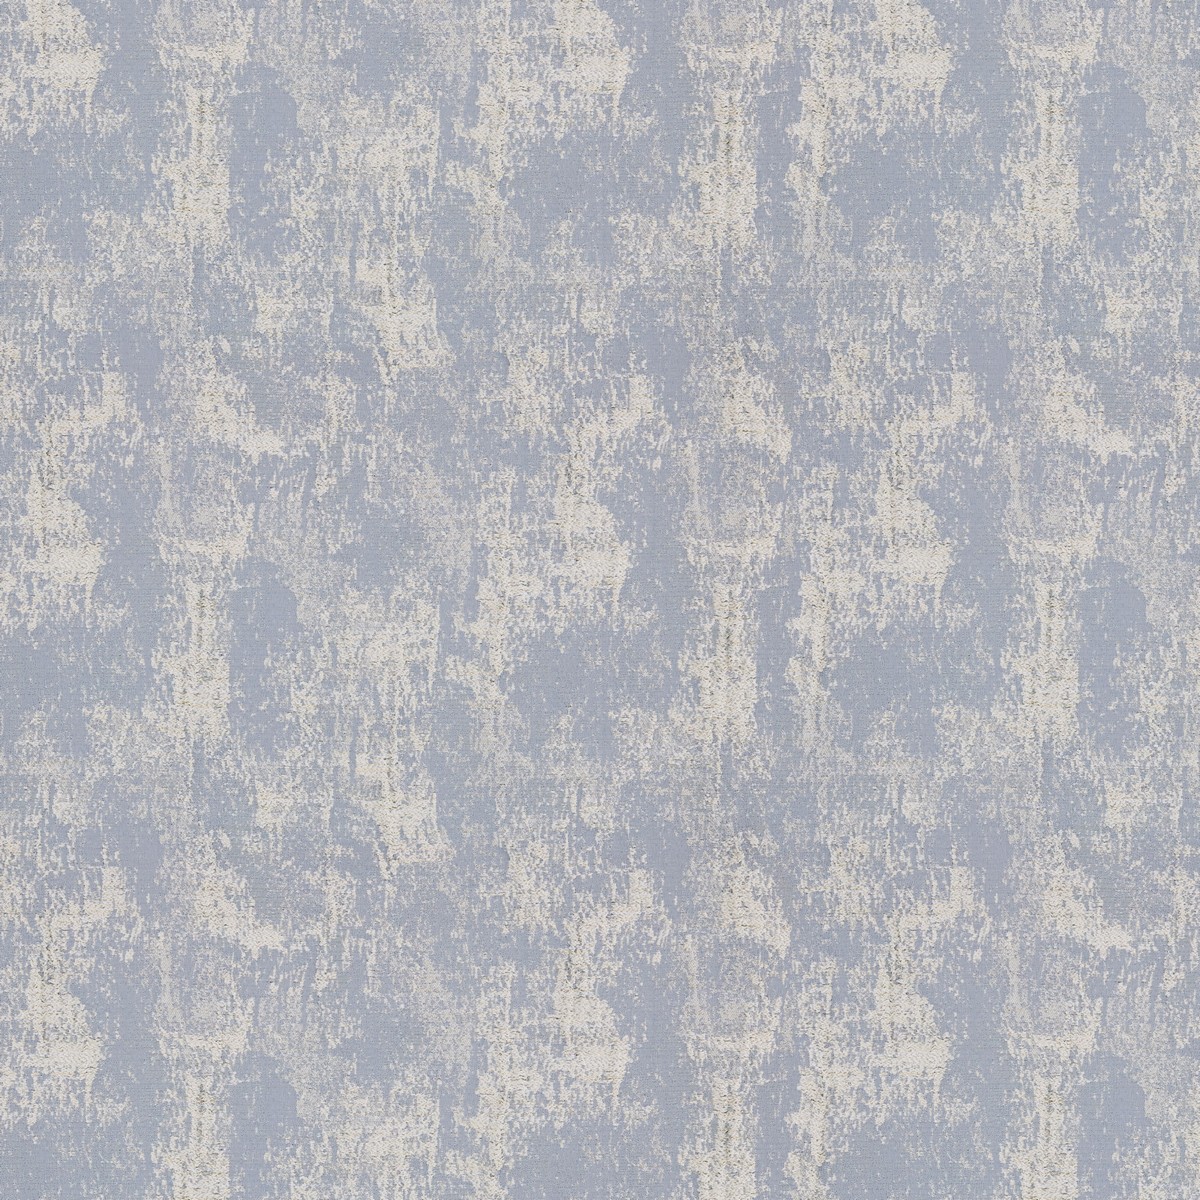 Curico Wedgewood Fabric by Ashley Wilde